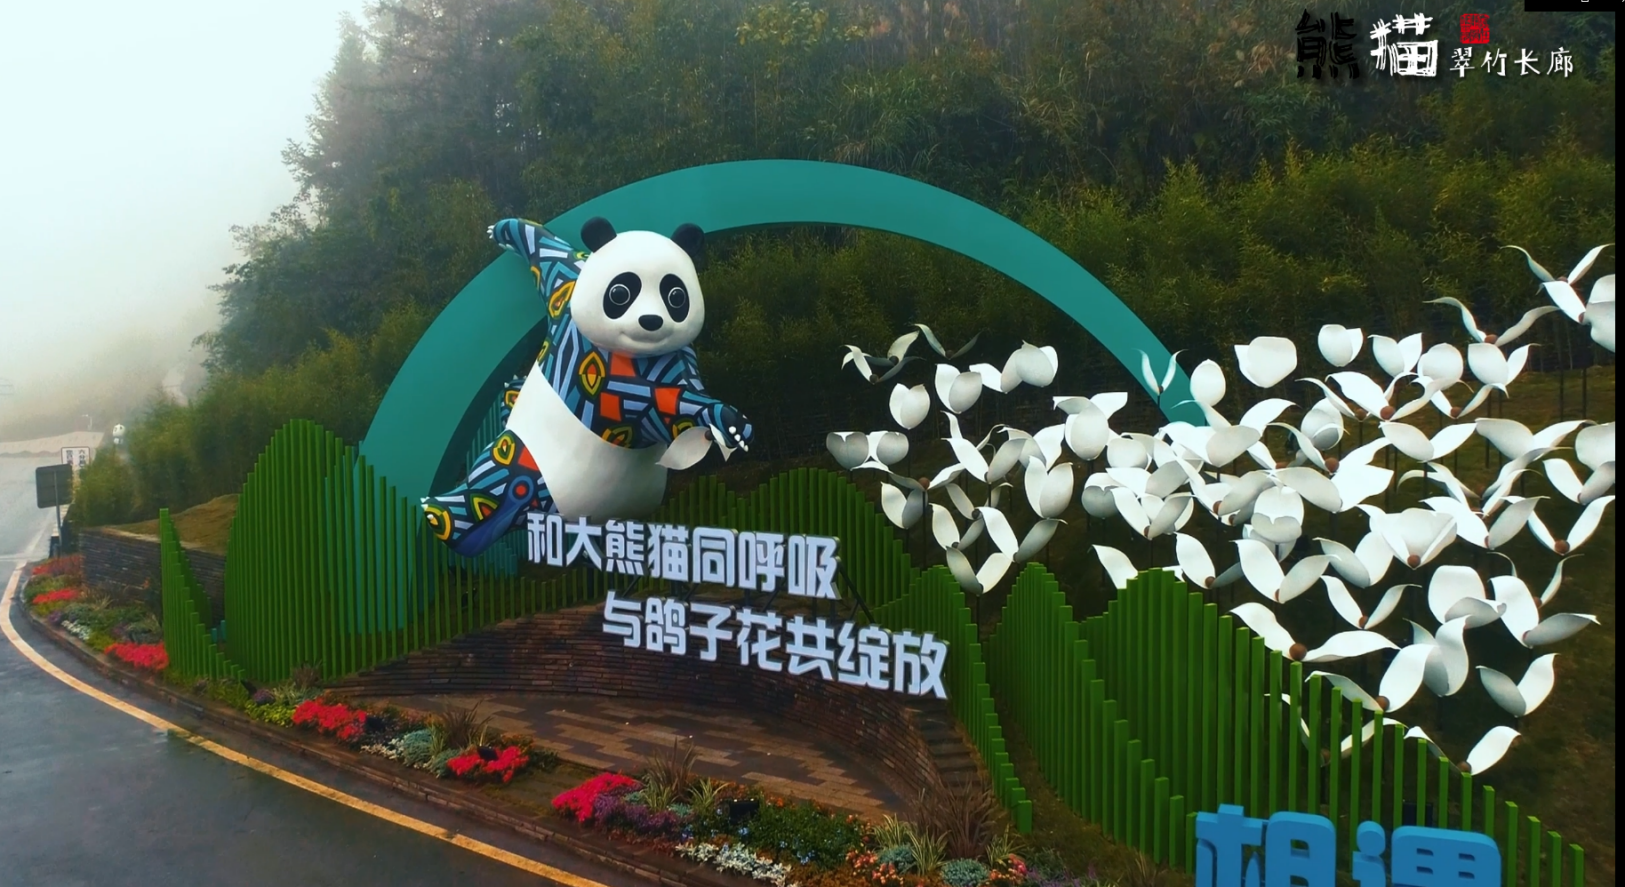 熊猫翠竹长廊 书写生态文明新画卷